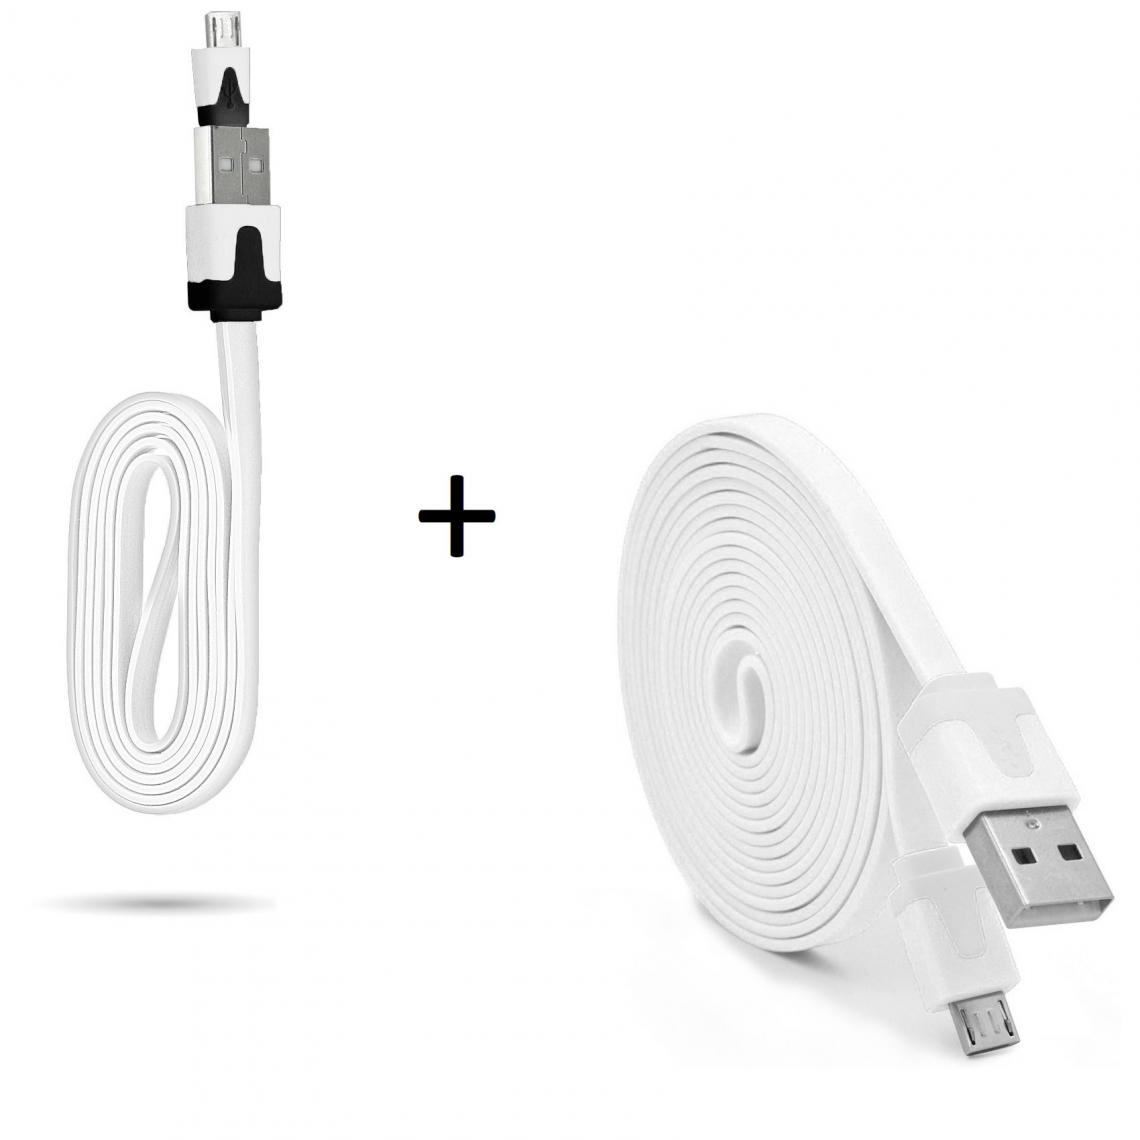 Shot - Pack Chargeur pour GIONEE F9 PLUS Smartphone Micro USB (Cable Noodle 3m + Cable Noodle 1m) Android (BLANC) - Chargeur secteur téléphone